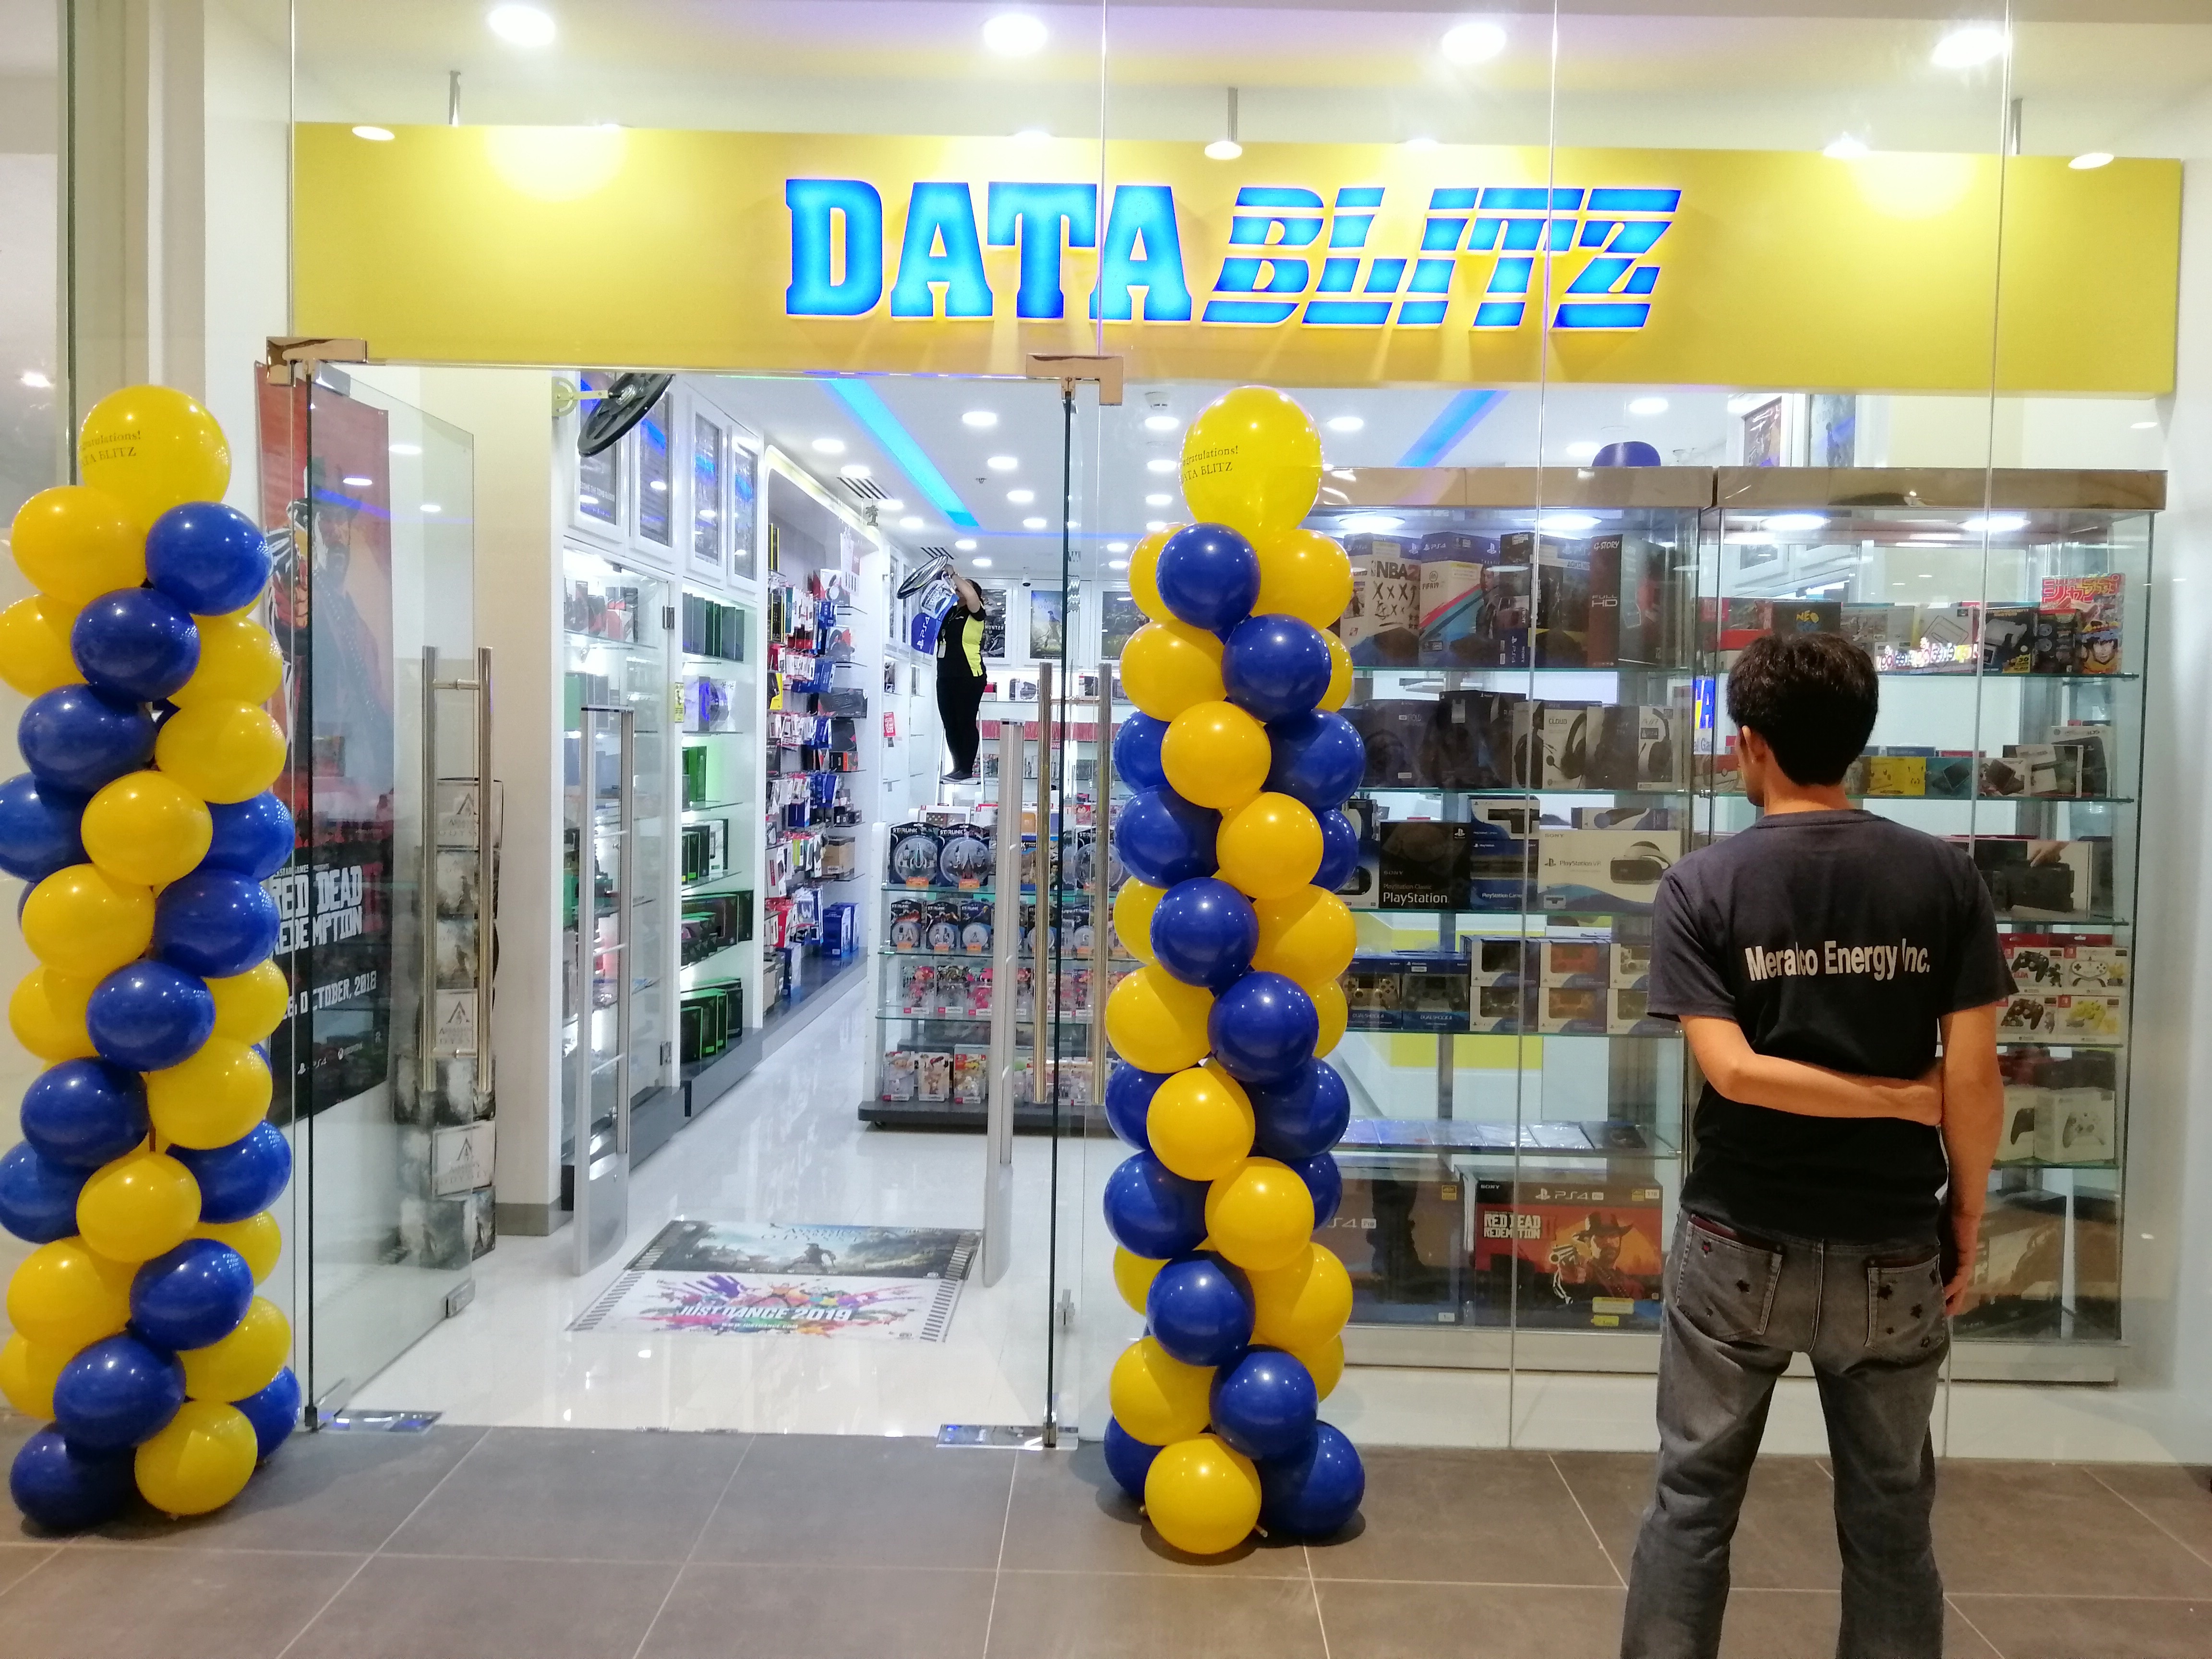 datablitz online store